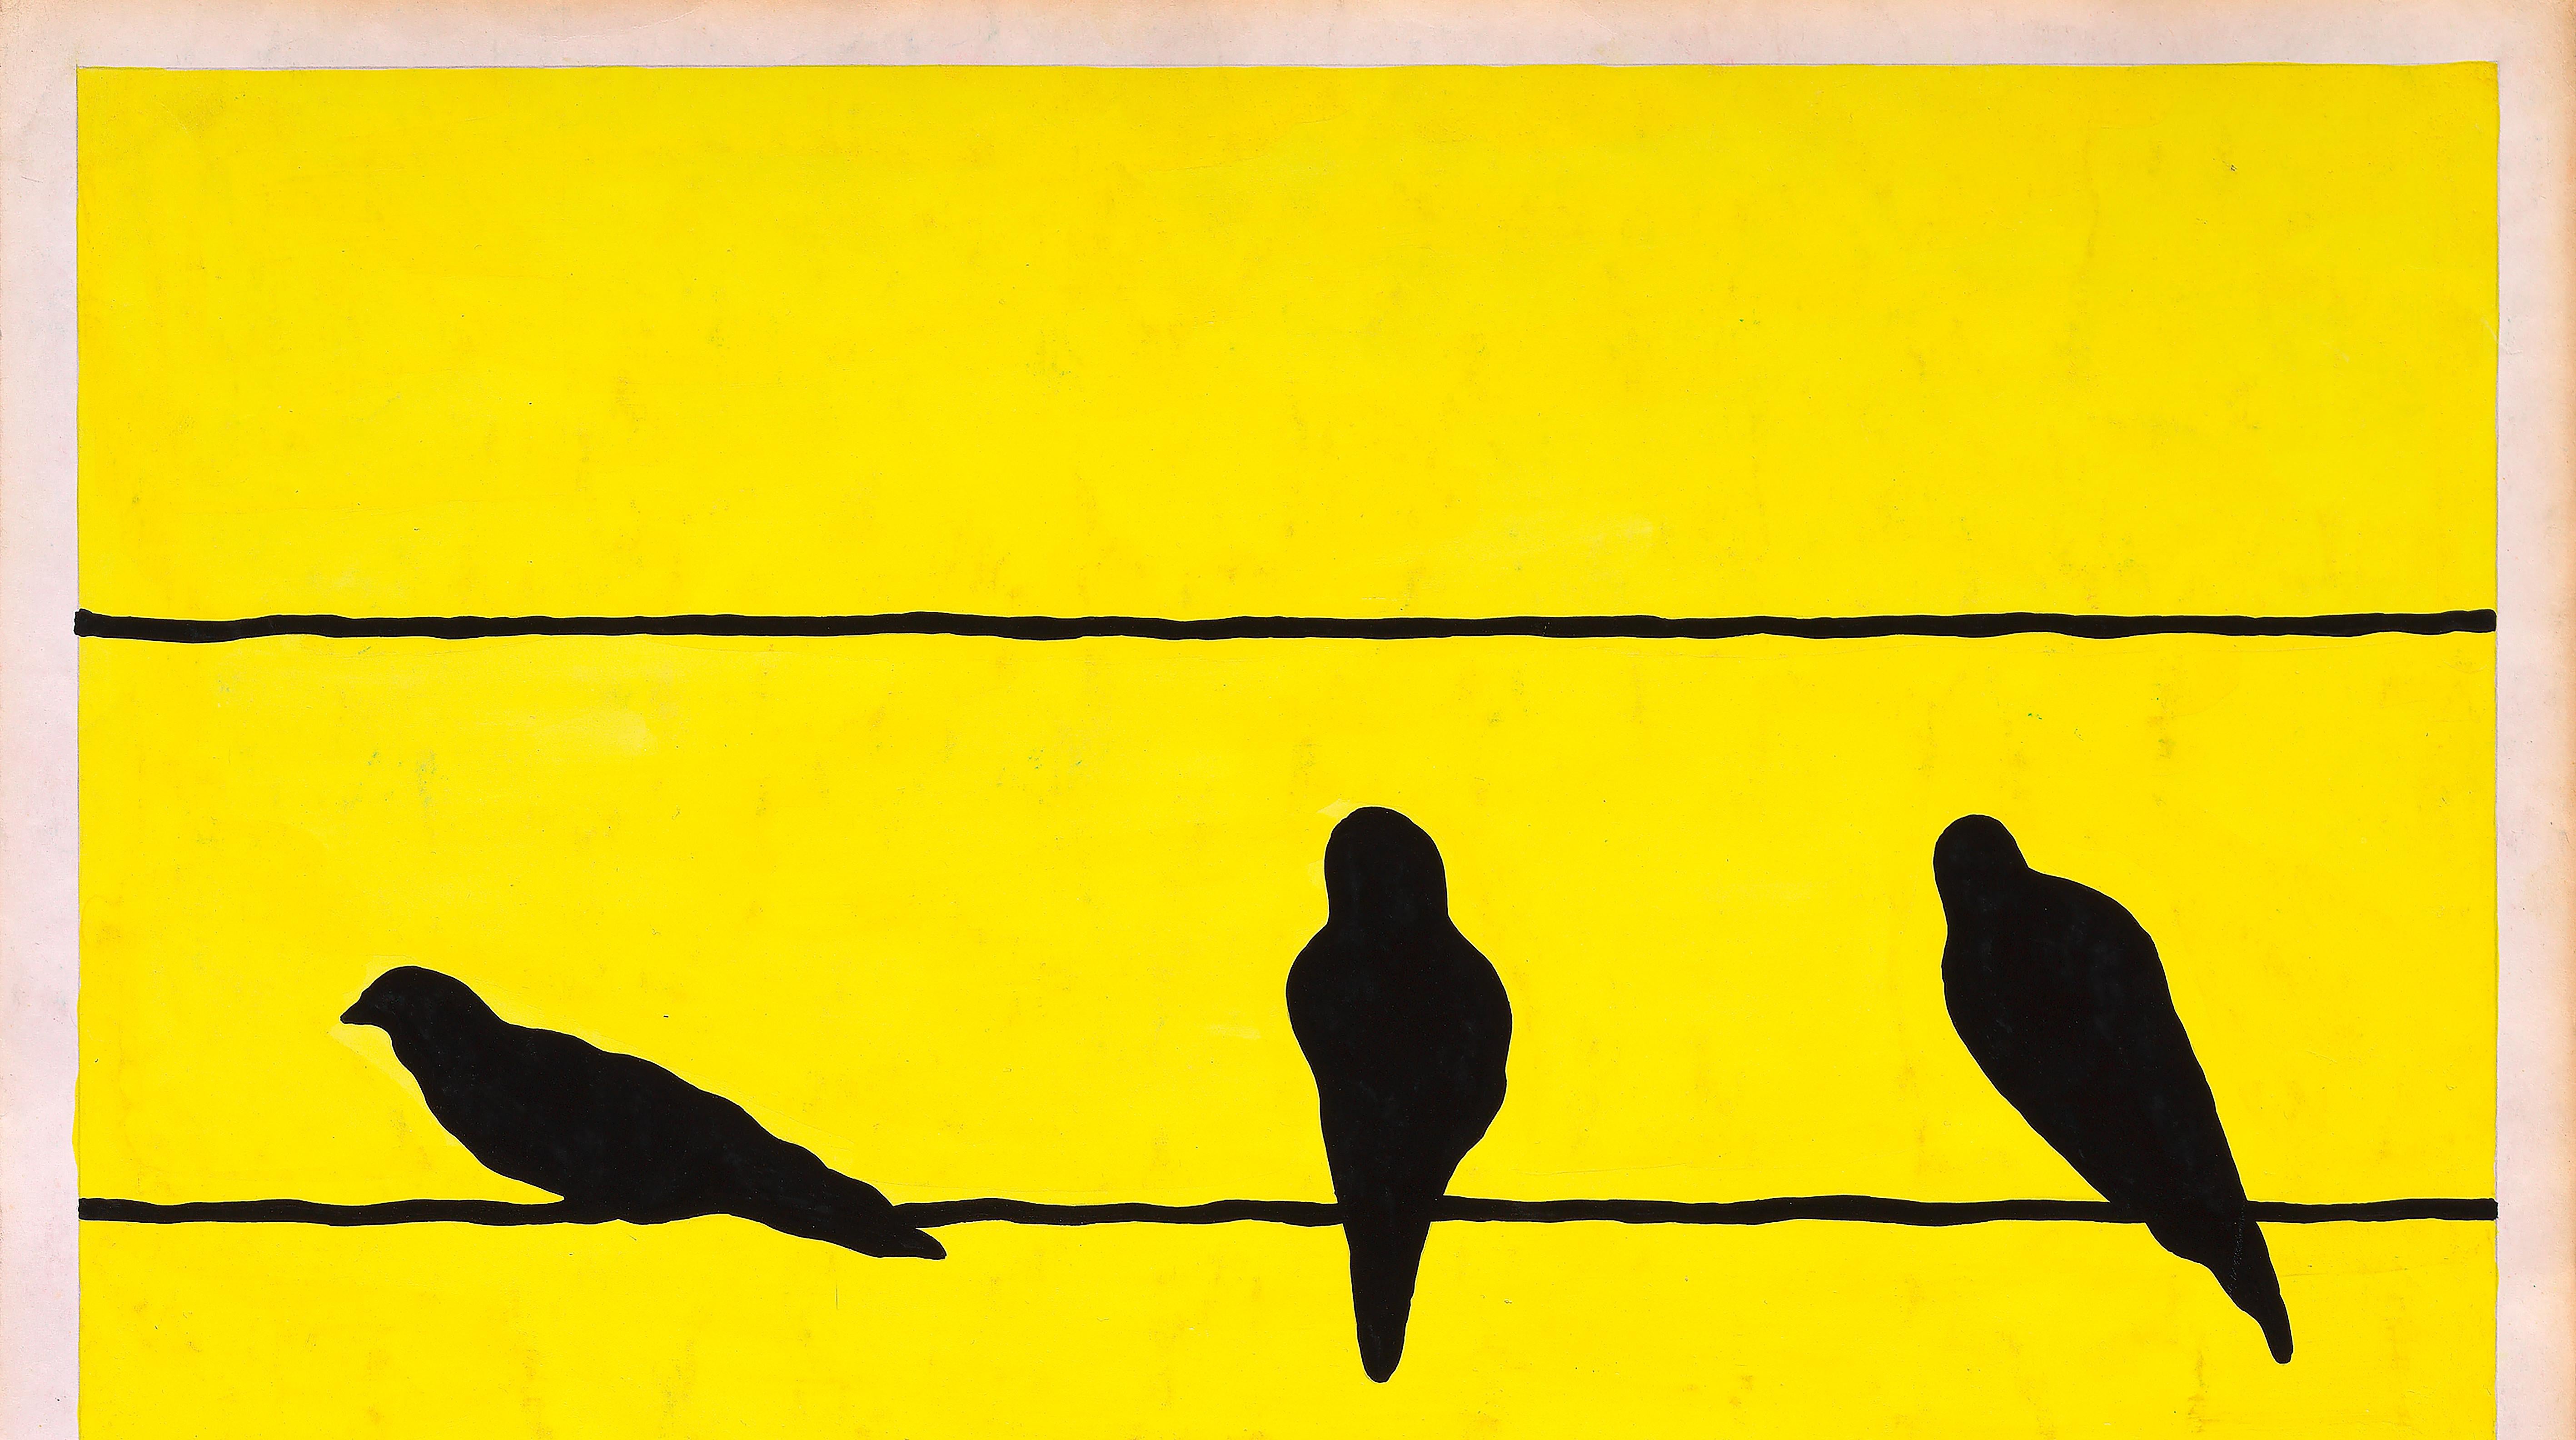 Conception textile originale des années 70 peinte à la main à la gouache jaune et noire sur papier - Jaune Animal Art par Unknown